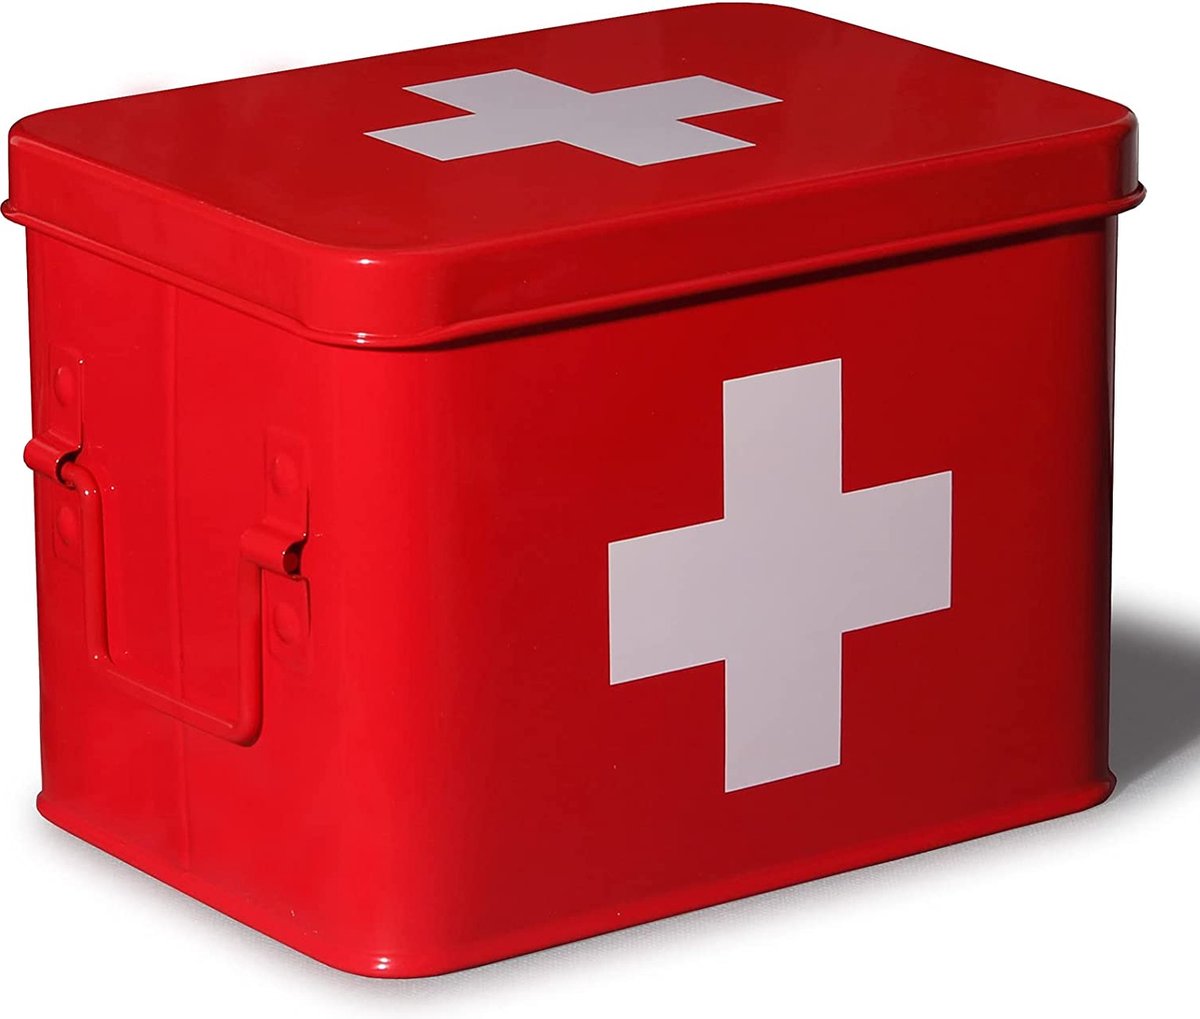 Theo&Cleo Medicijndoos, metaal, eerstehulpdoos, koffer, kast, medicijnkast, retro, medicijnkast, 22 x 16 x 16 cm, rood 22 cm